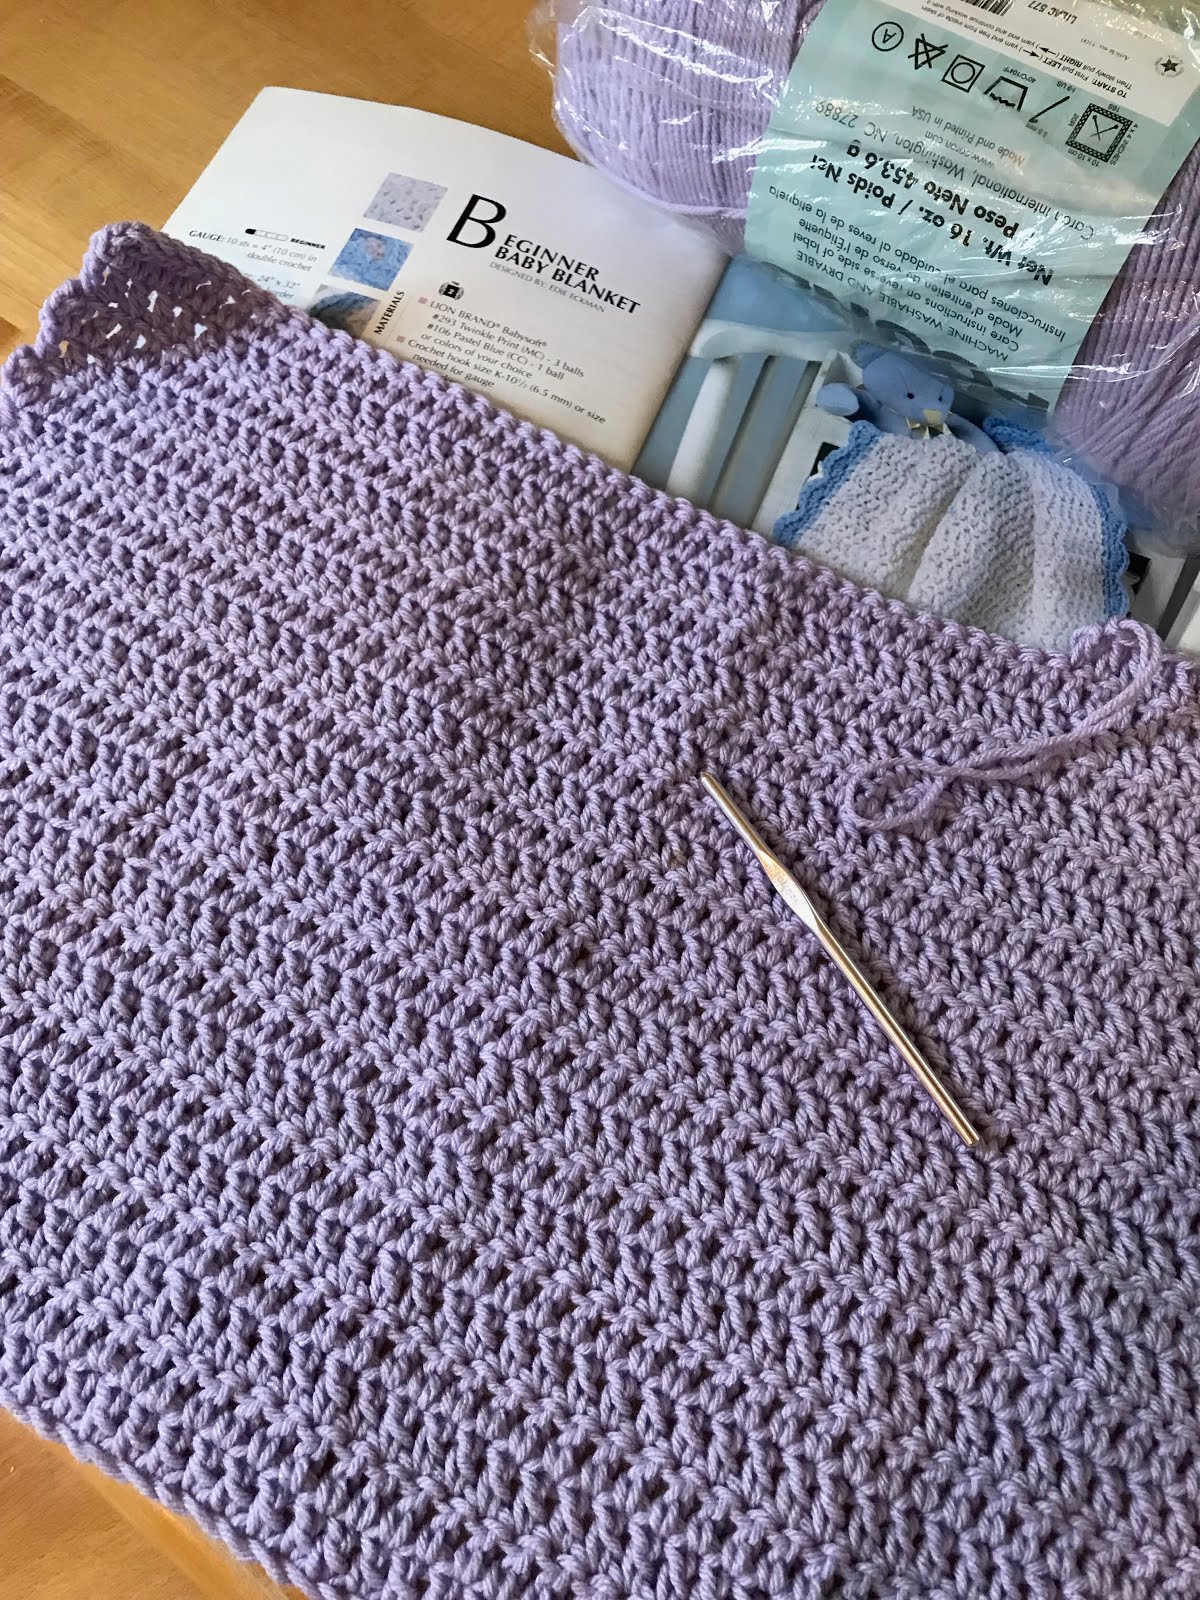 Making a Knit Scarf Using Blanket Yarn